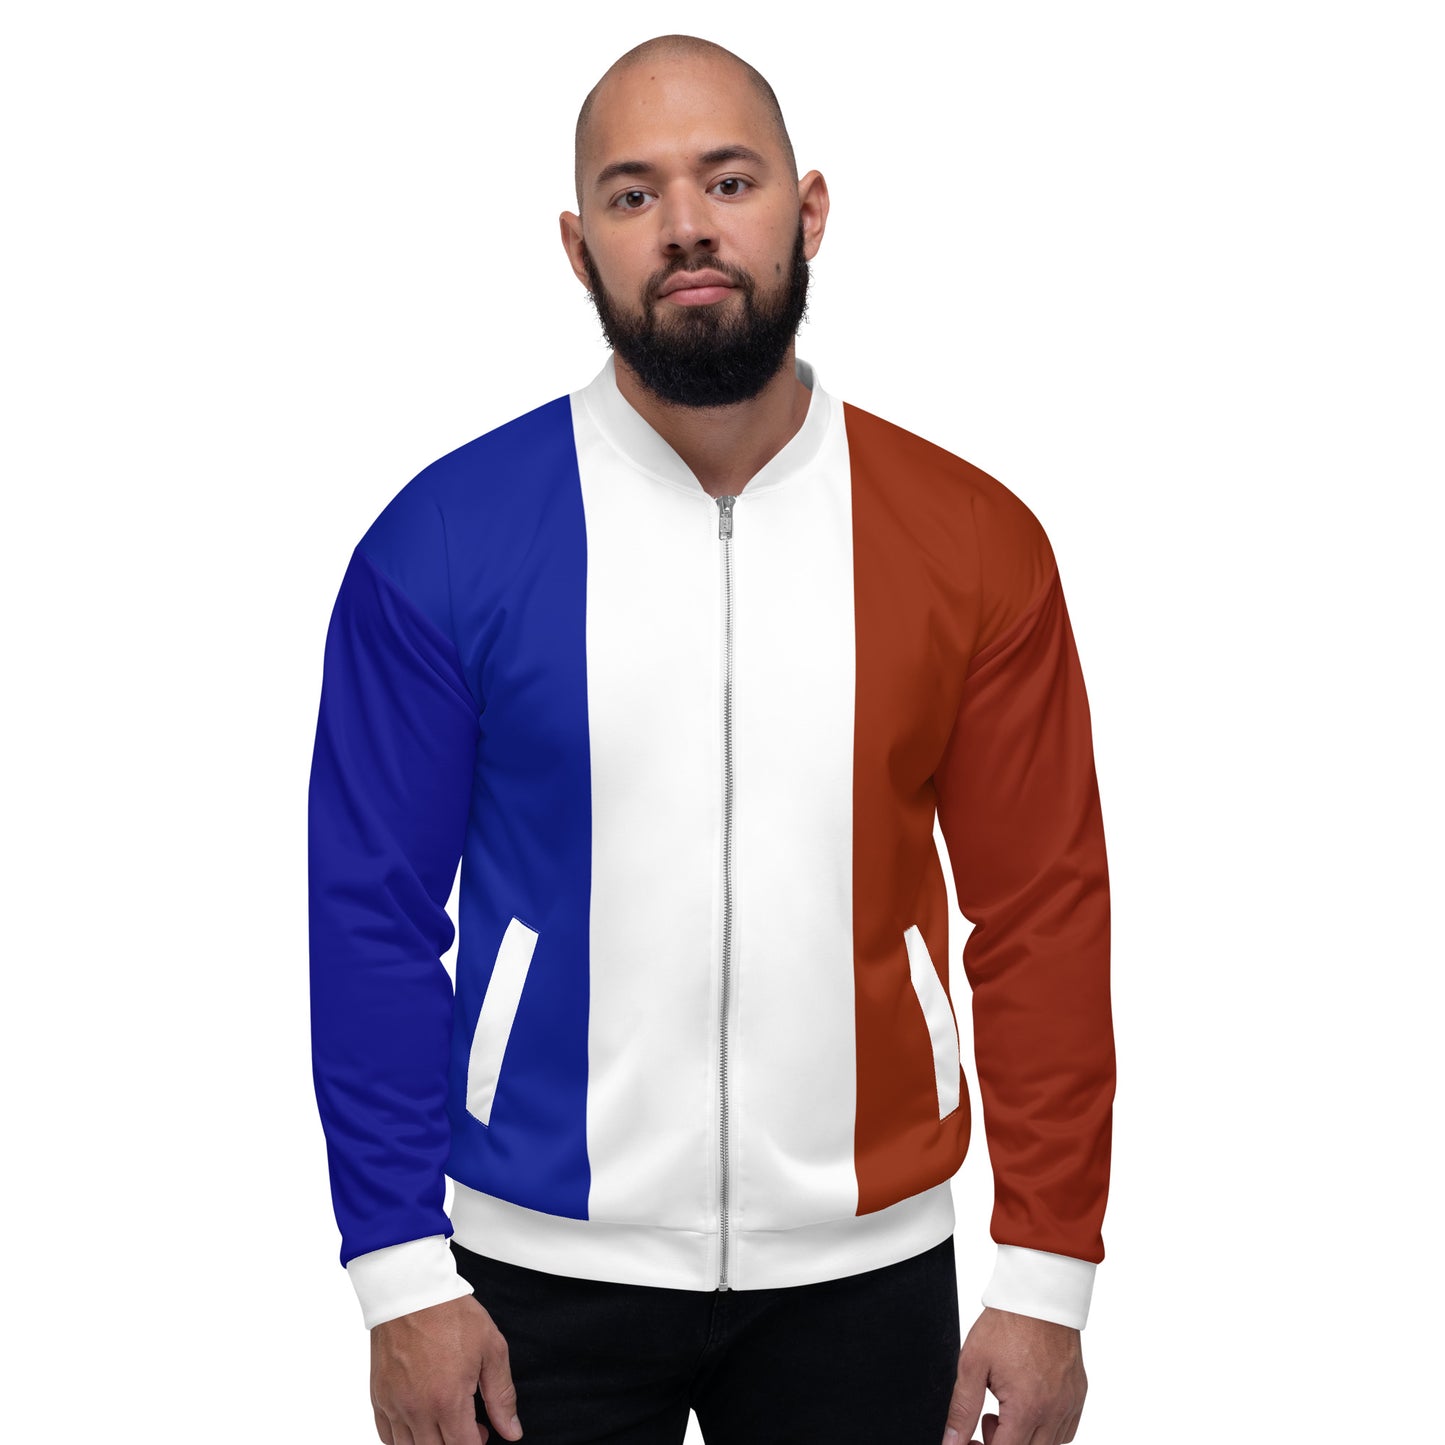 Französische Jacke / Bomberjacke mit Farben der französischen Flagge / Unisex-Kleidung